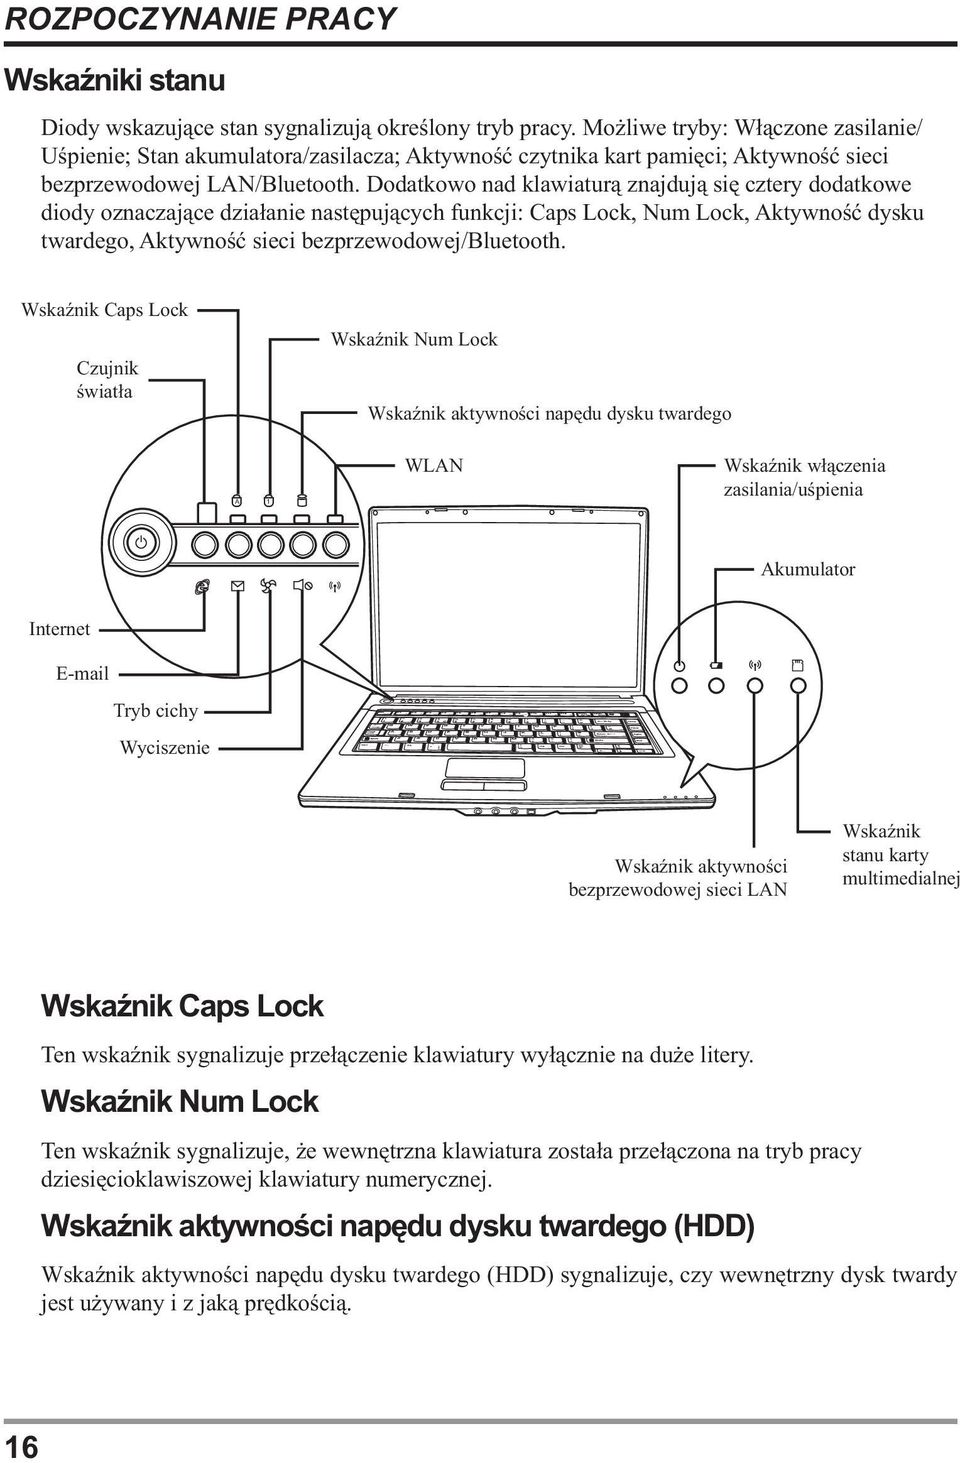 Dodatkowo nad klawiaturą znajdują się cztery dodatkowe diody oznaczające działanie następujących funkcji: Caps Lock, Num Lock, Aktywność dysku twardego, Aktywność sieci bezprzewodowej/bluetooth.